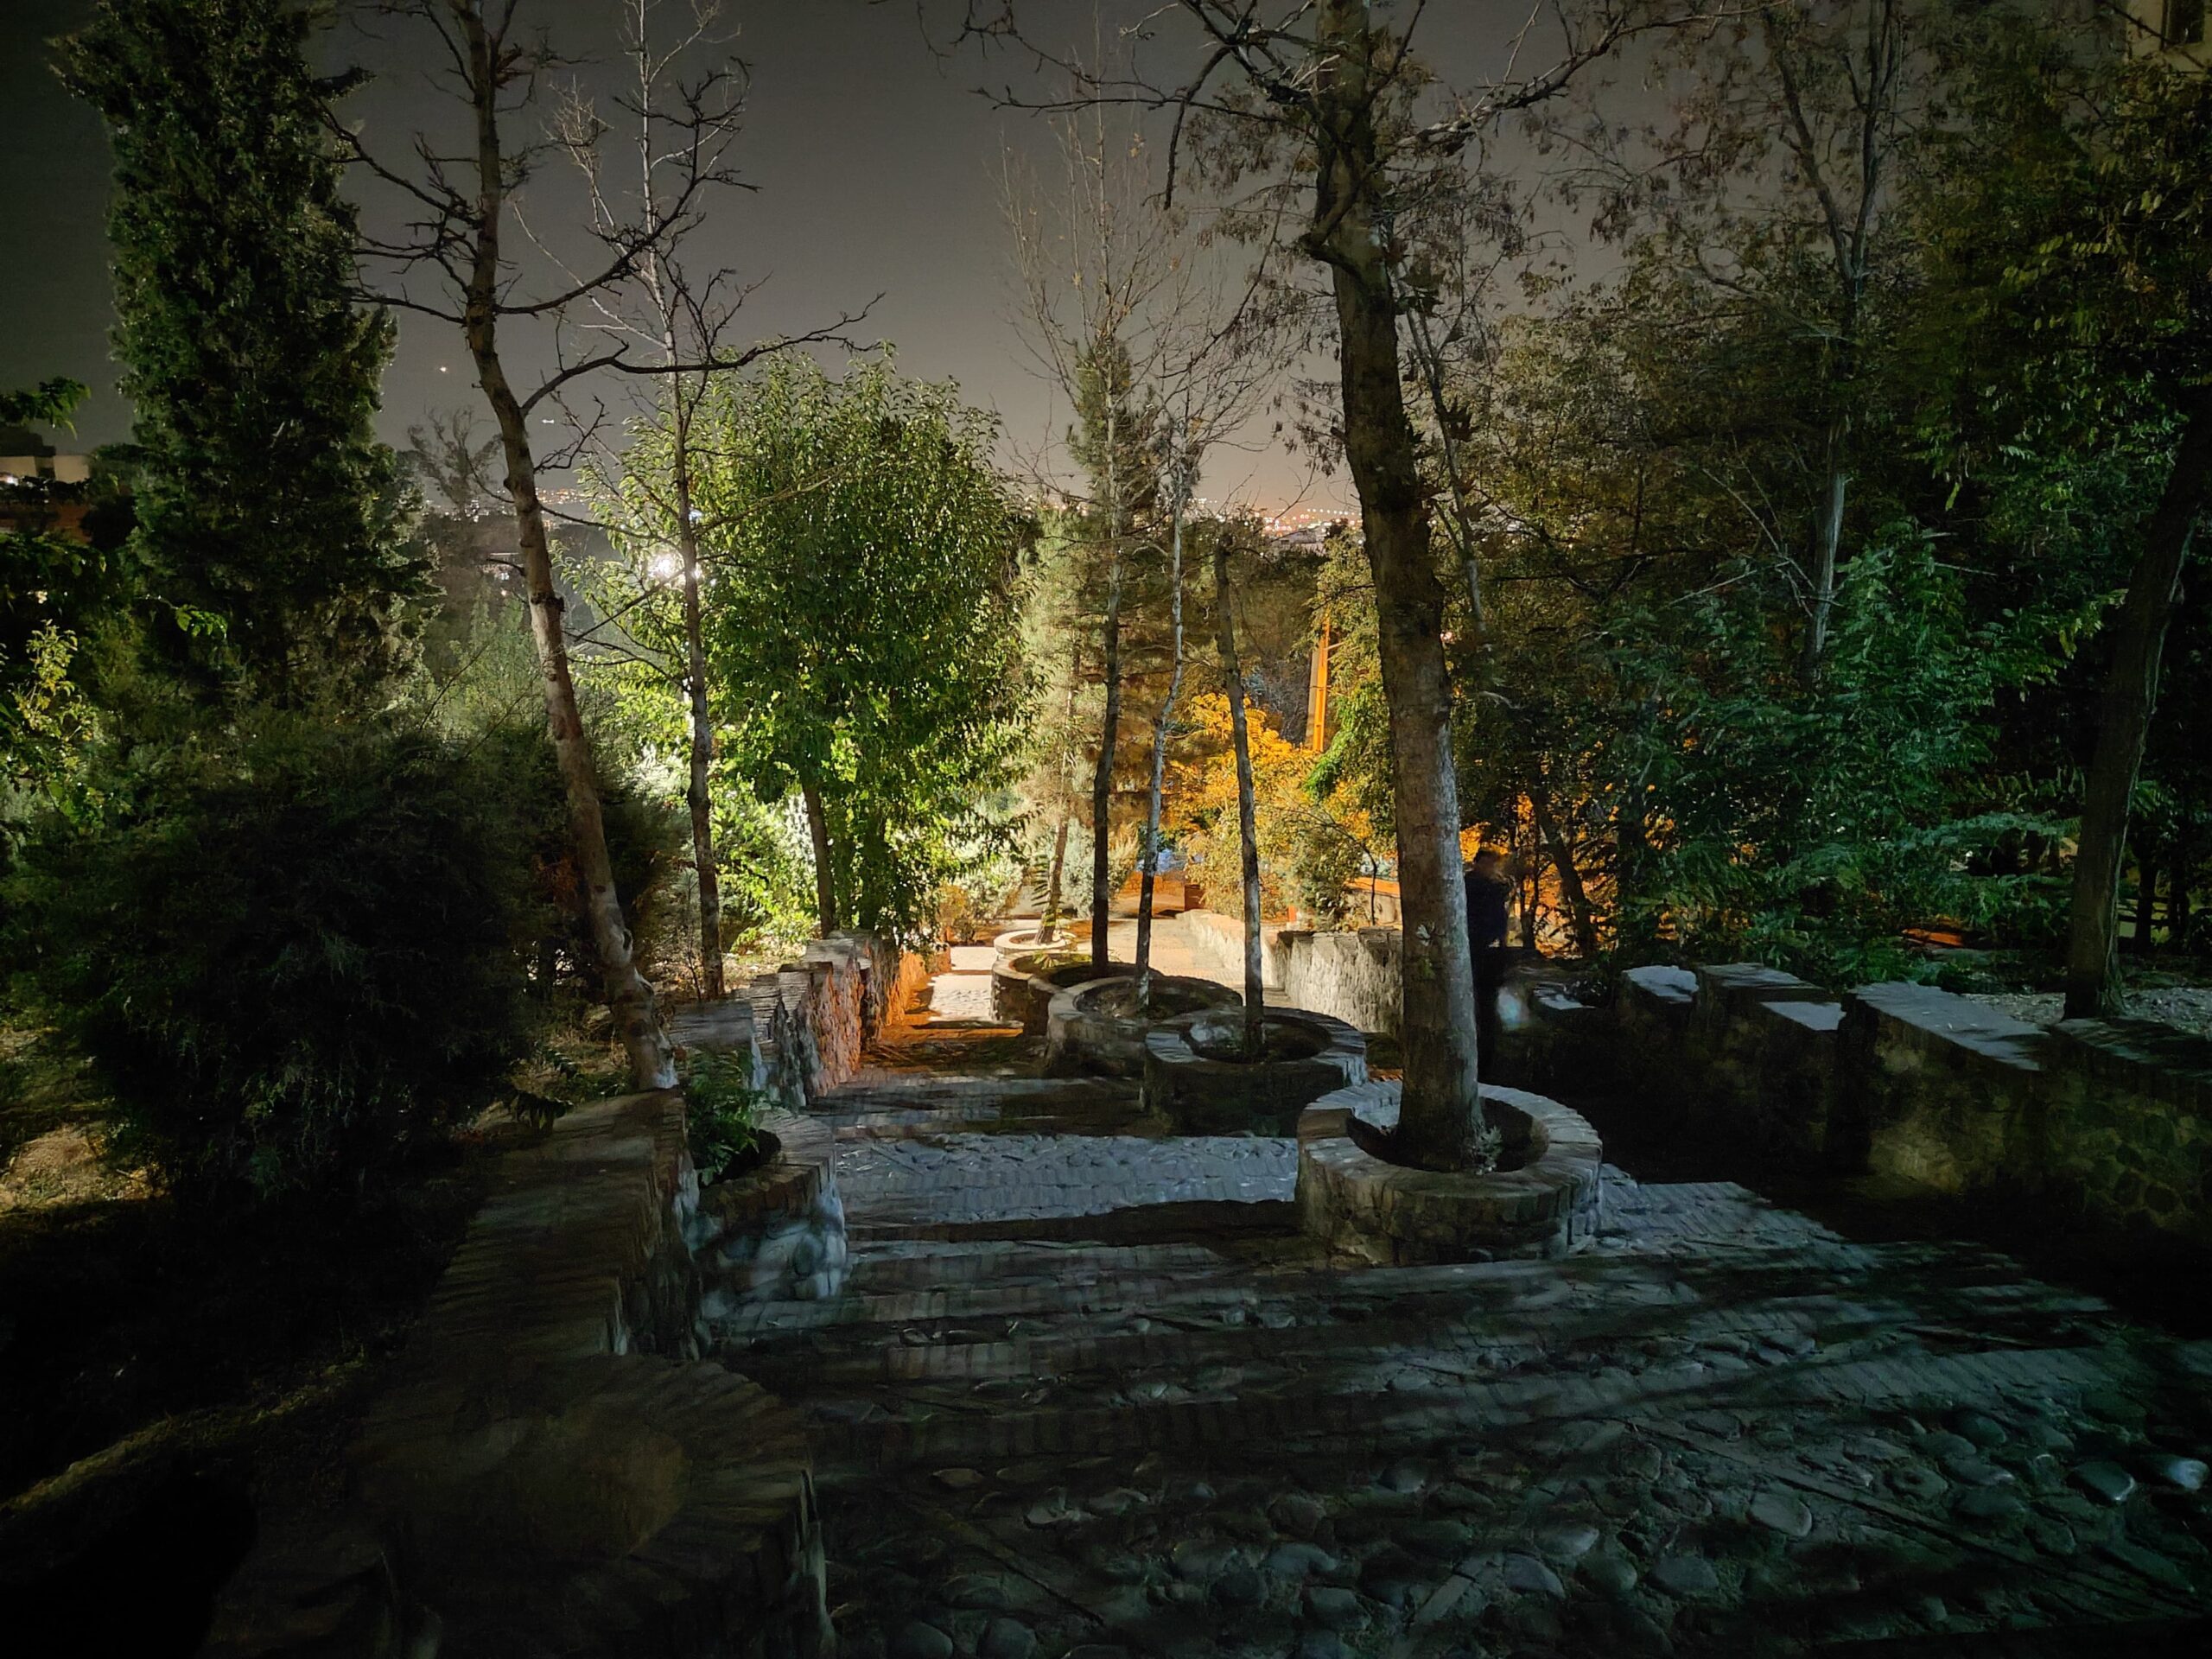 نمونه عکس دوربین اصلی شیائومی ۱۲ لایت در شب با Night Mode روشن - عکس اول